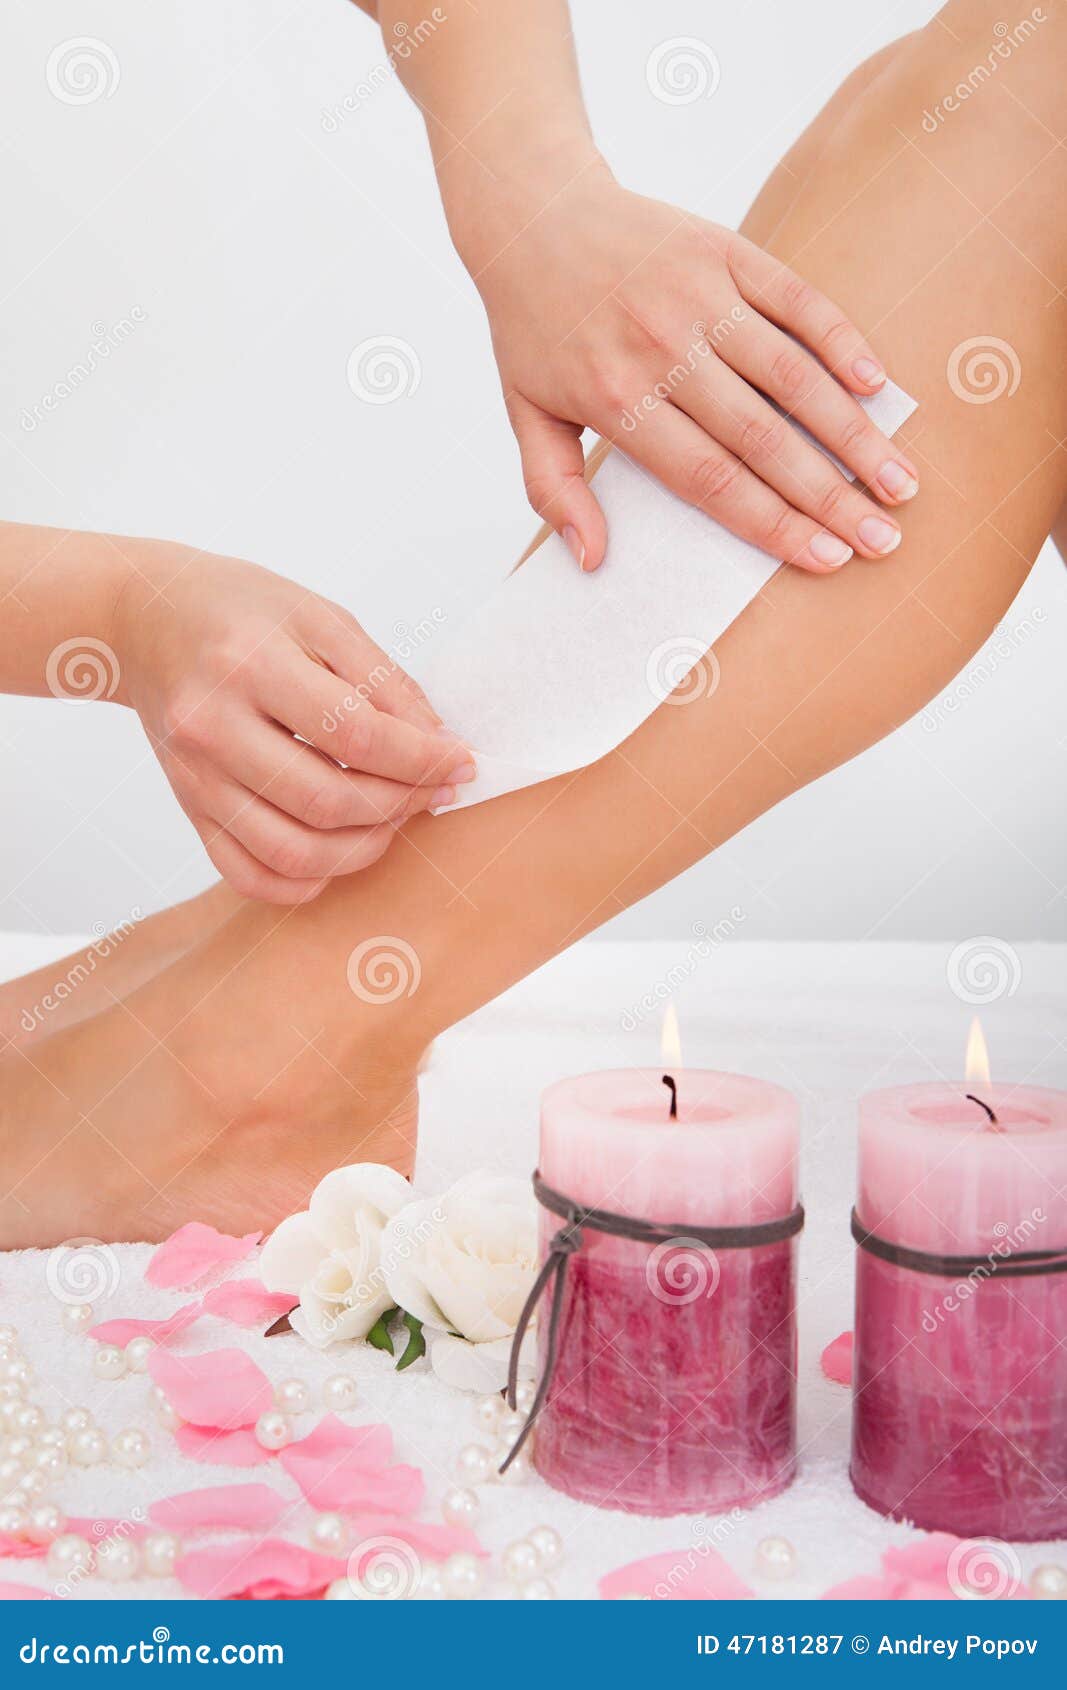 beautician waxing a woman's leg